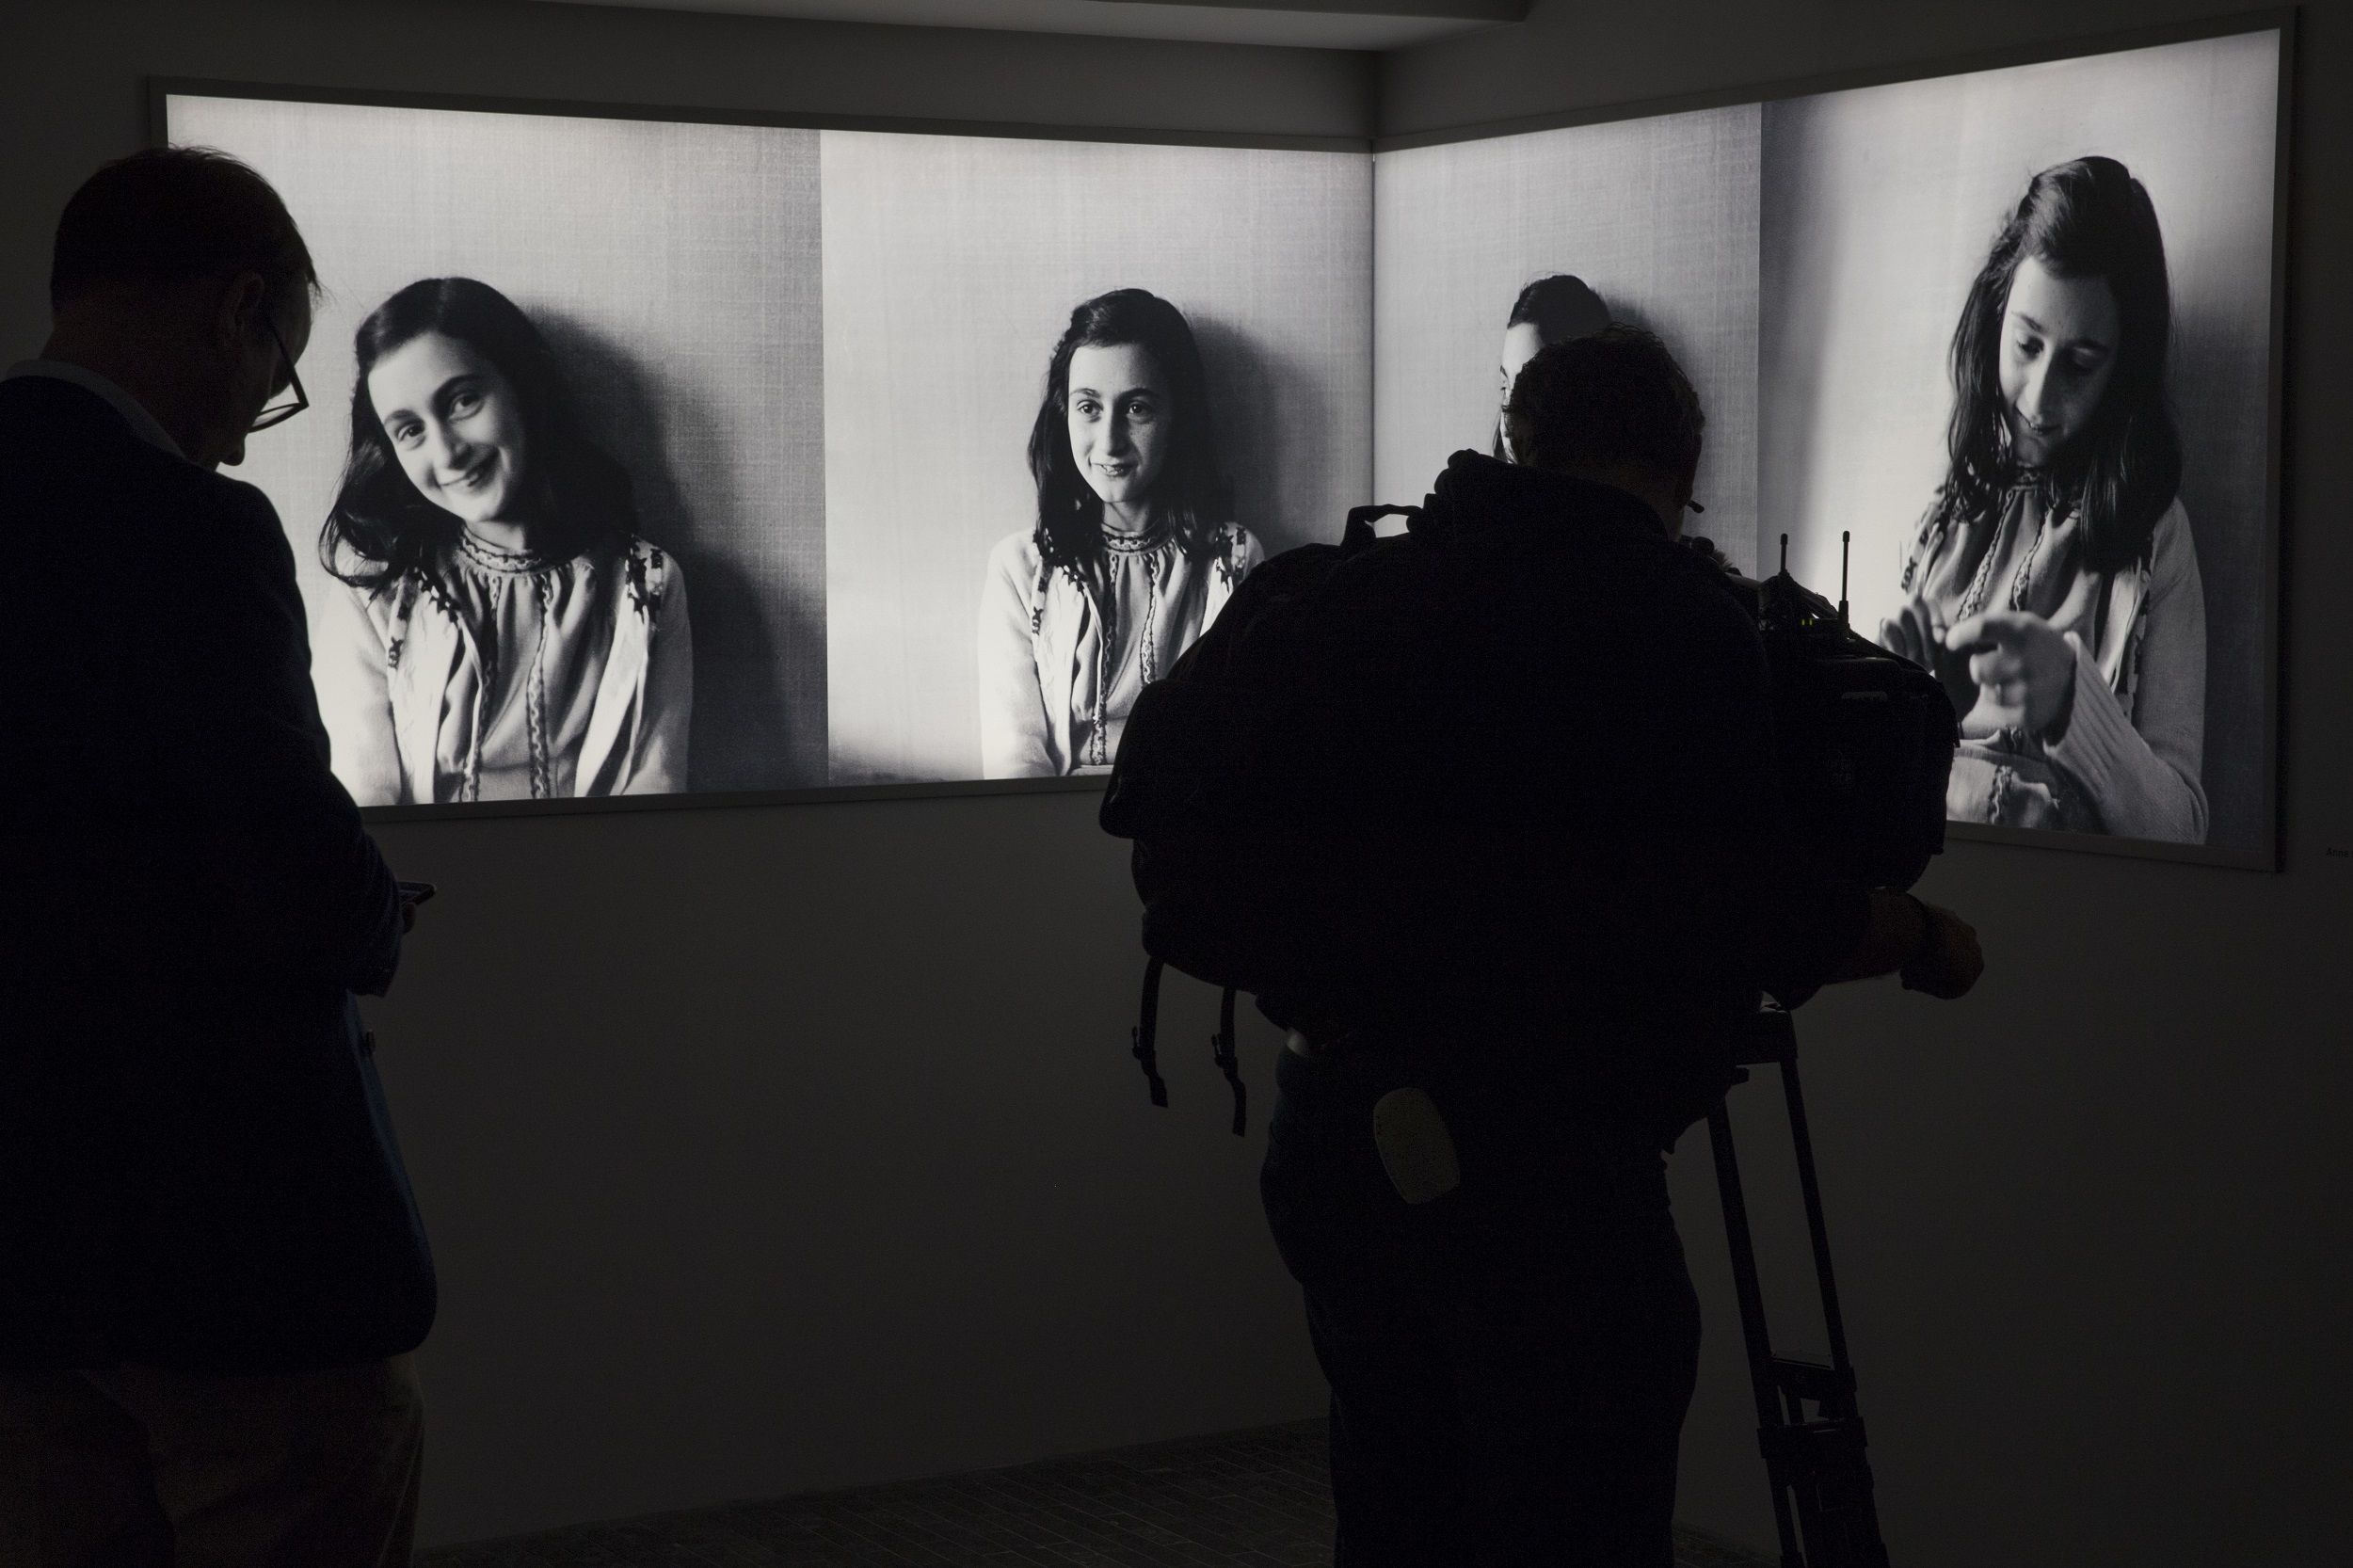 Museo Ana Frank en Amsterdam estrena nueva imagen, con cambios para llegar al público joven